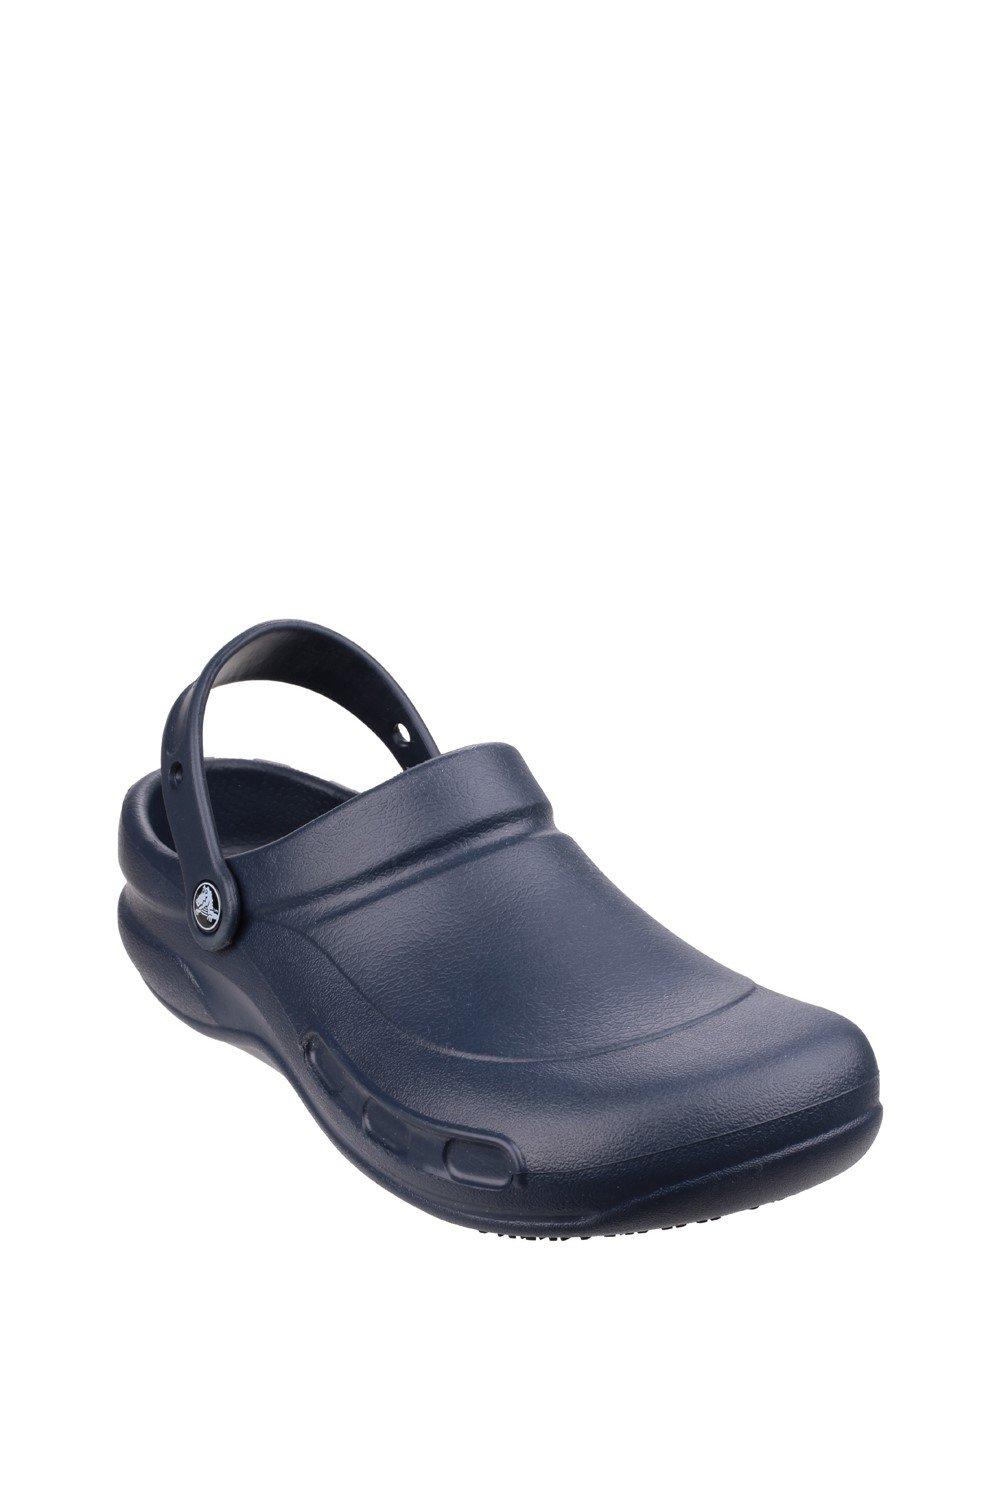 Туфли-слипоны из термопластика Бистро Crocs, темно-синий туфли без шнуровки из термопластика сезонный камуфляж crocs серый